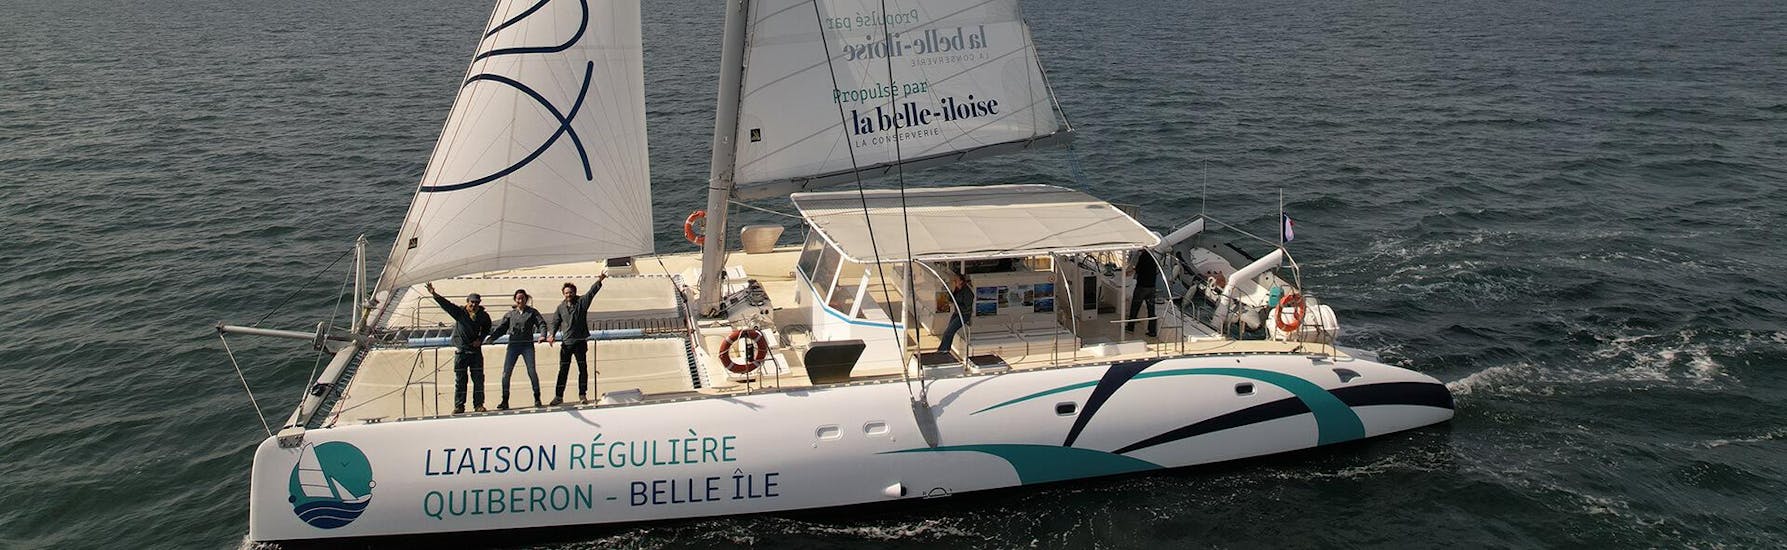 Le catamaran de Iliens - La navette qui met les voiles Quiberon en route pour Belle-Île.